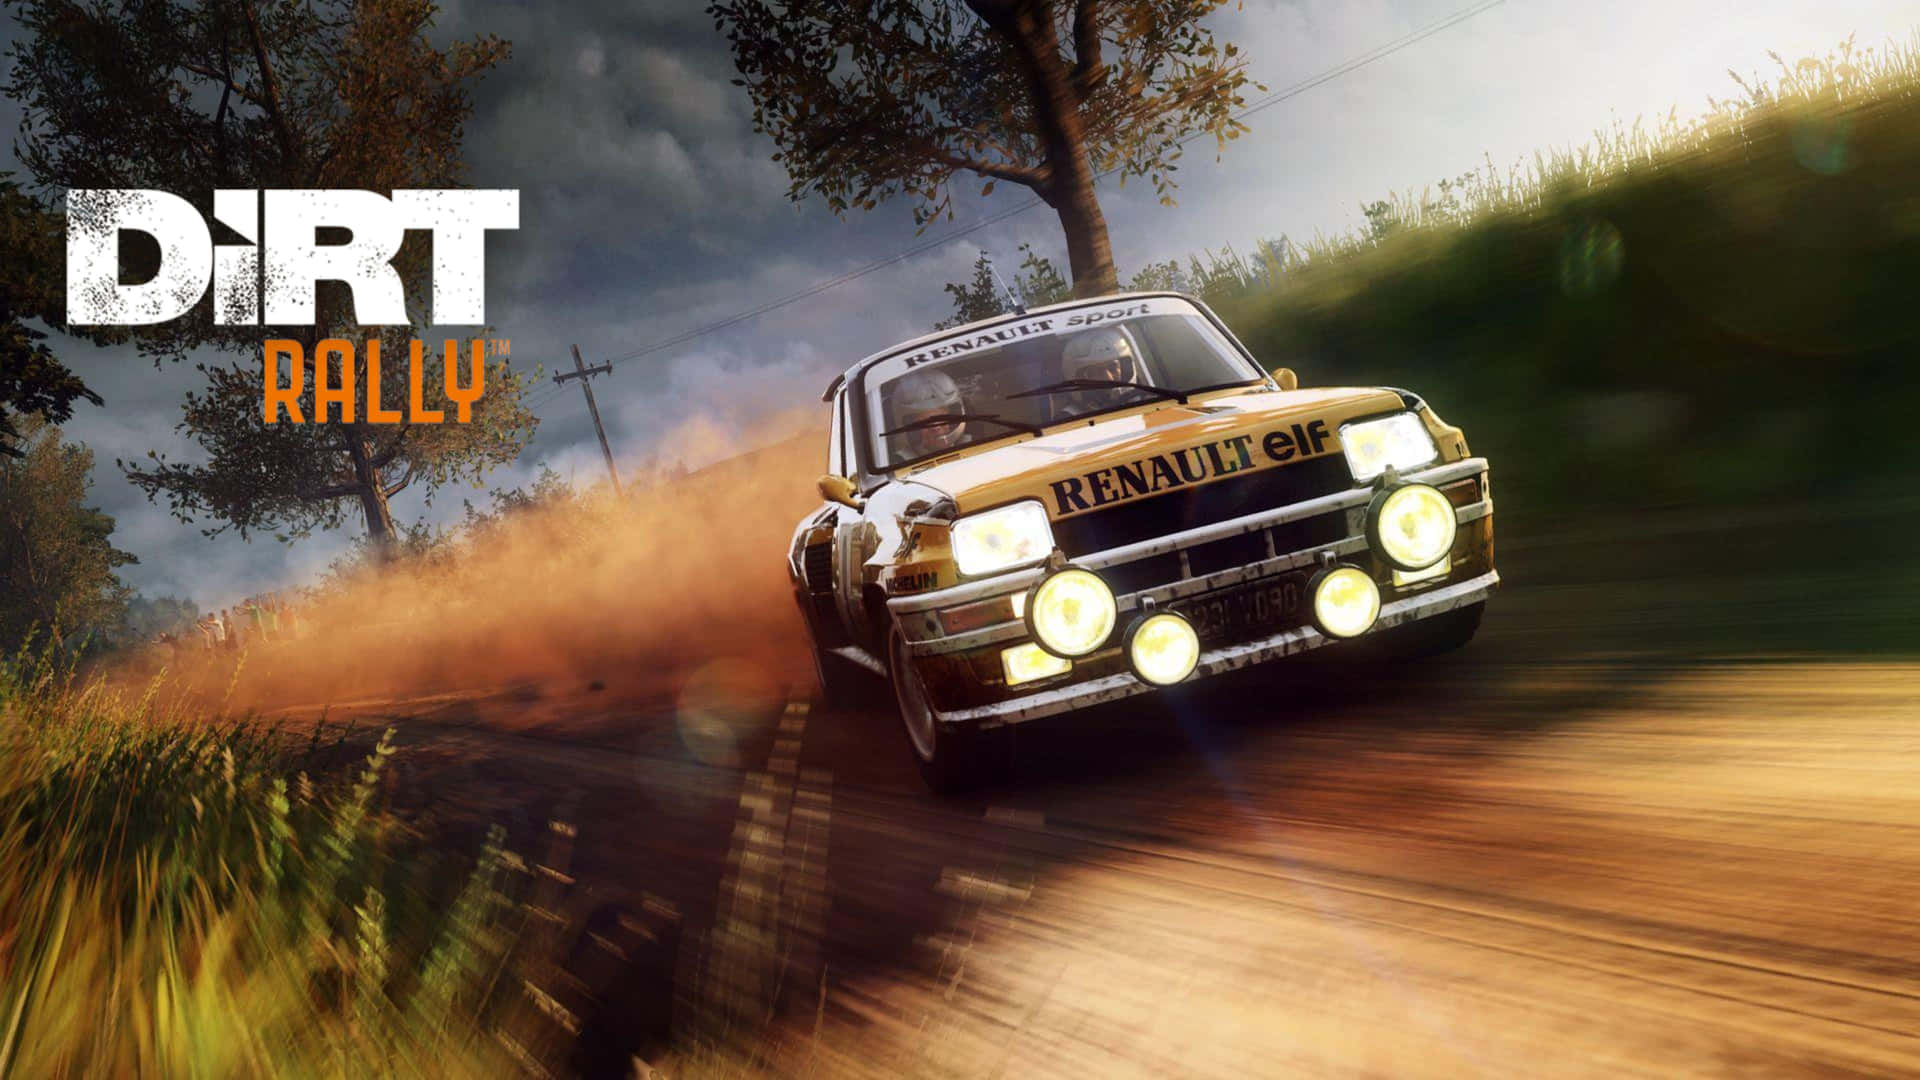 Velocidady Emoción - Siente La Adrenalina De Dirt Rally En 4k.